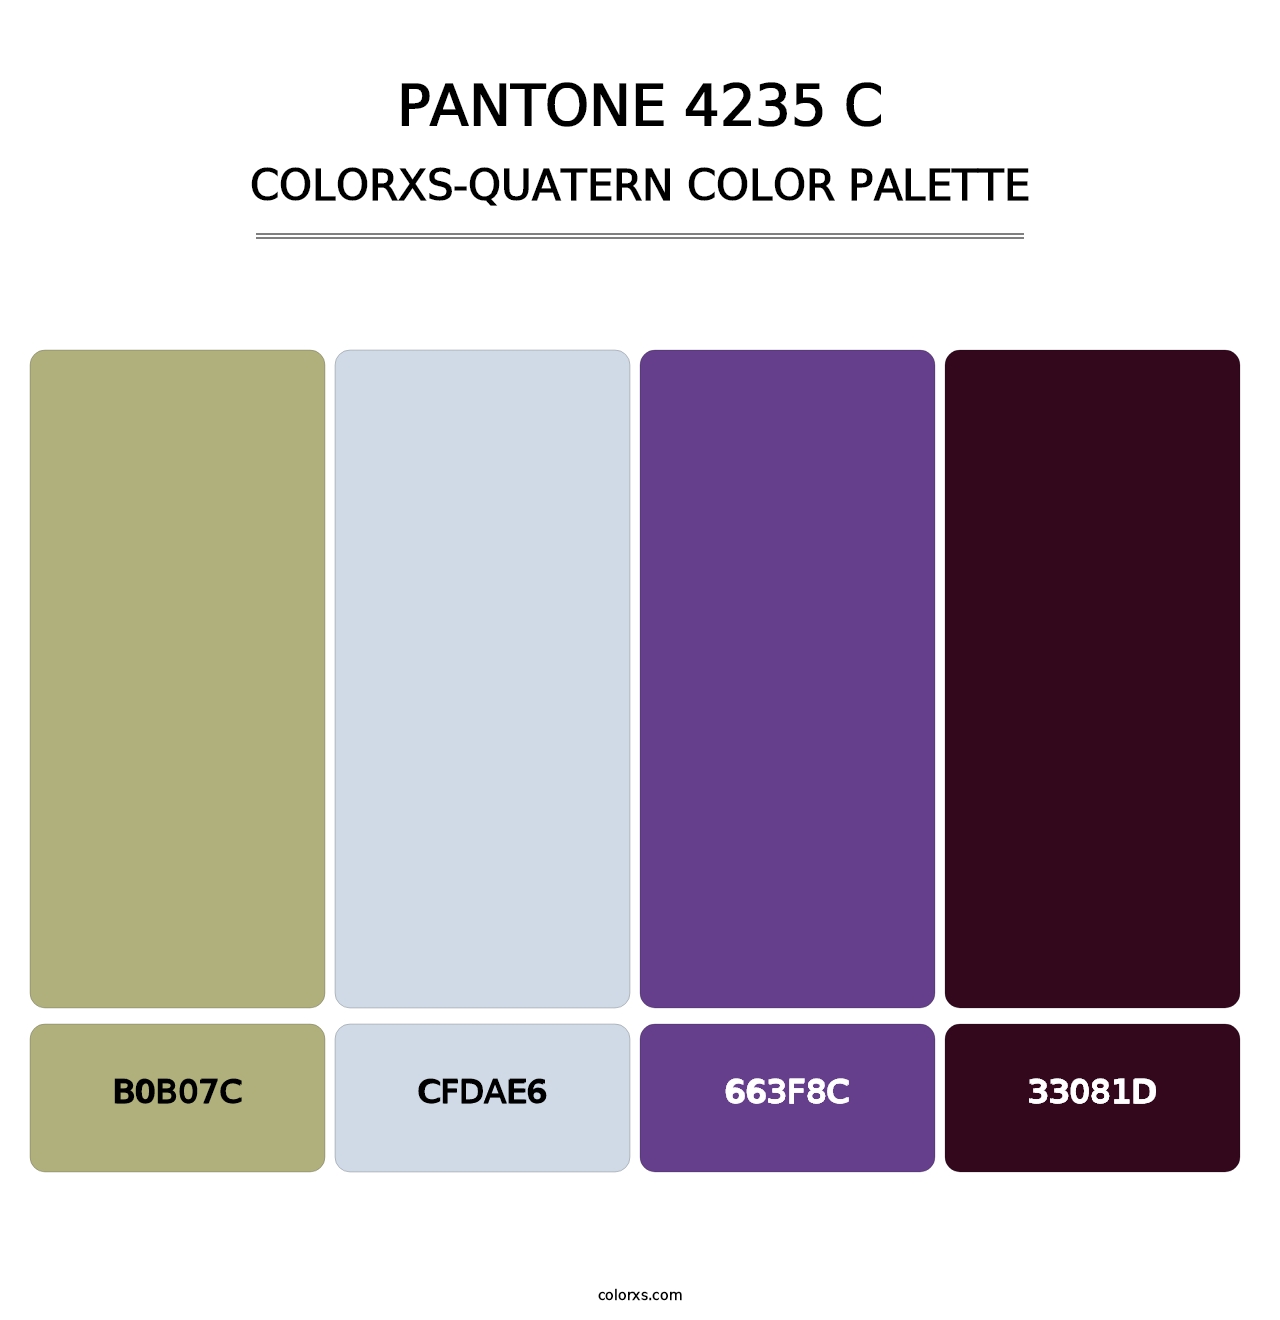 PANTONE 4235 C - Colorxs Quatern Palette